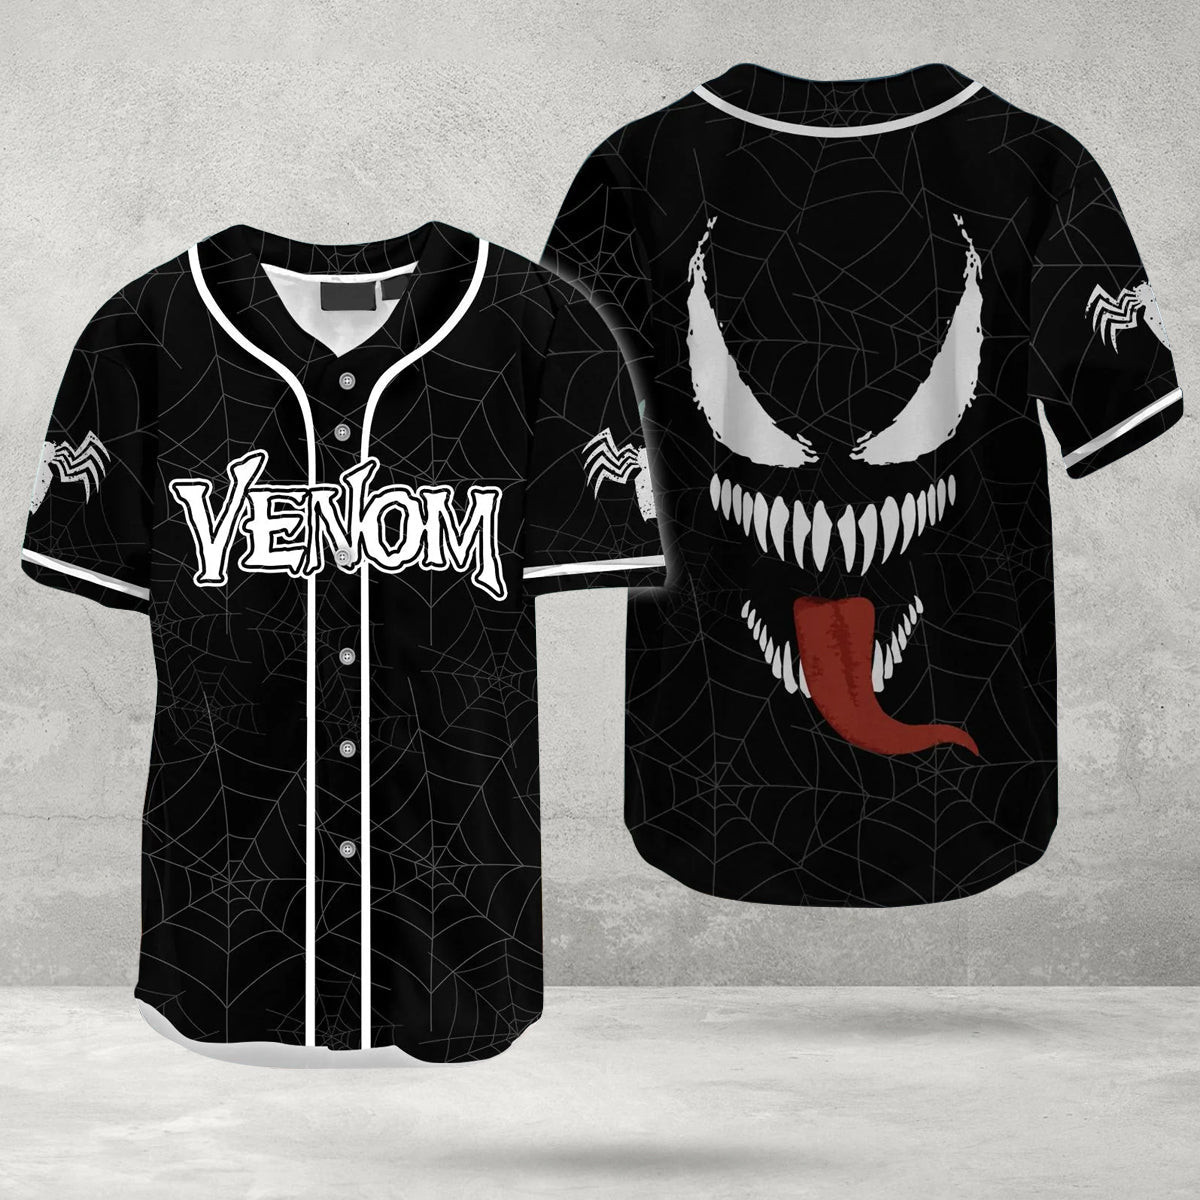 Venom Inspired Face Spider Baseball Jersey, Unisex Baseball Jersey for Men Women